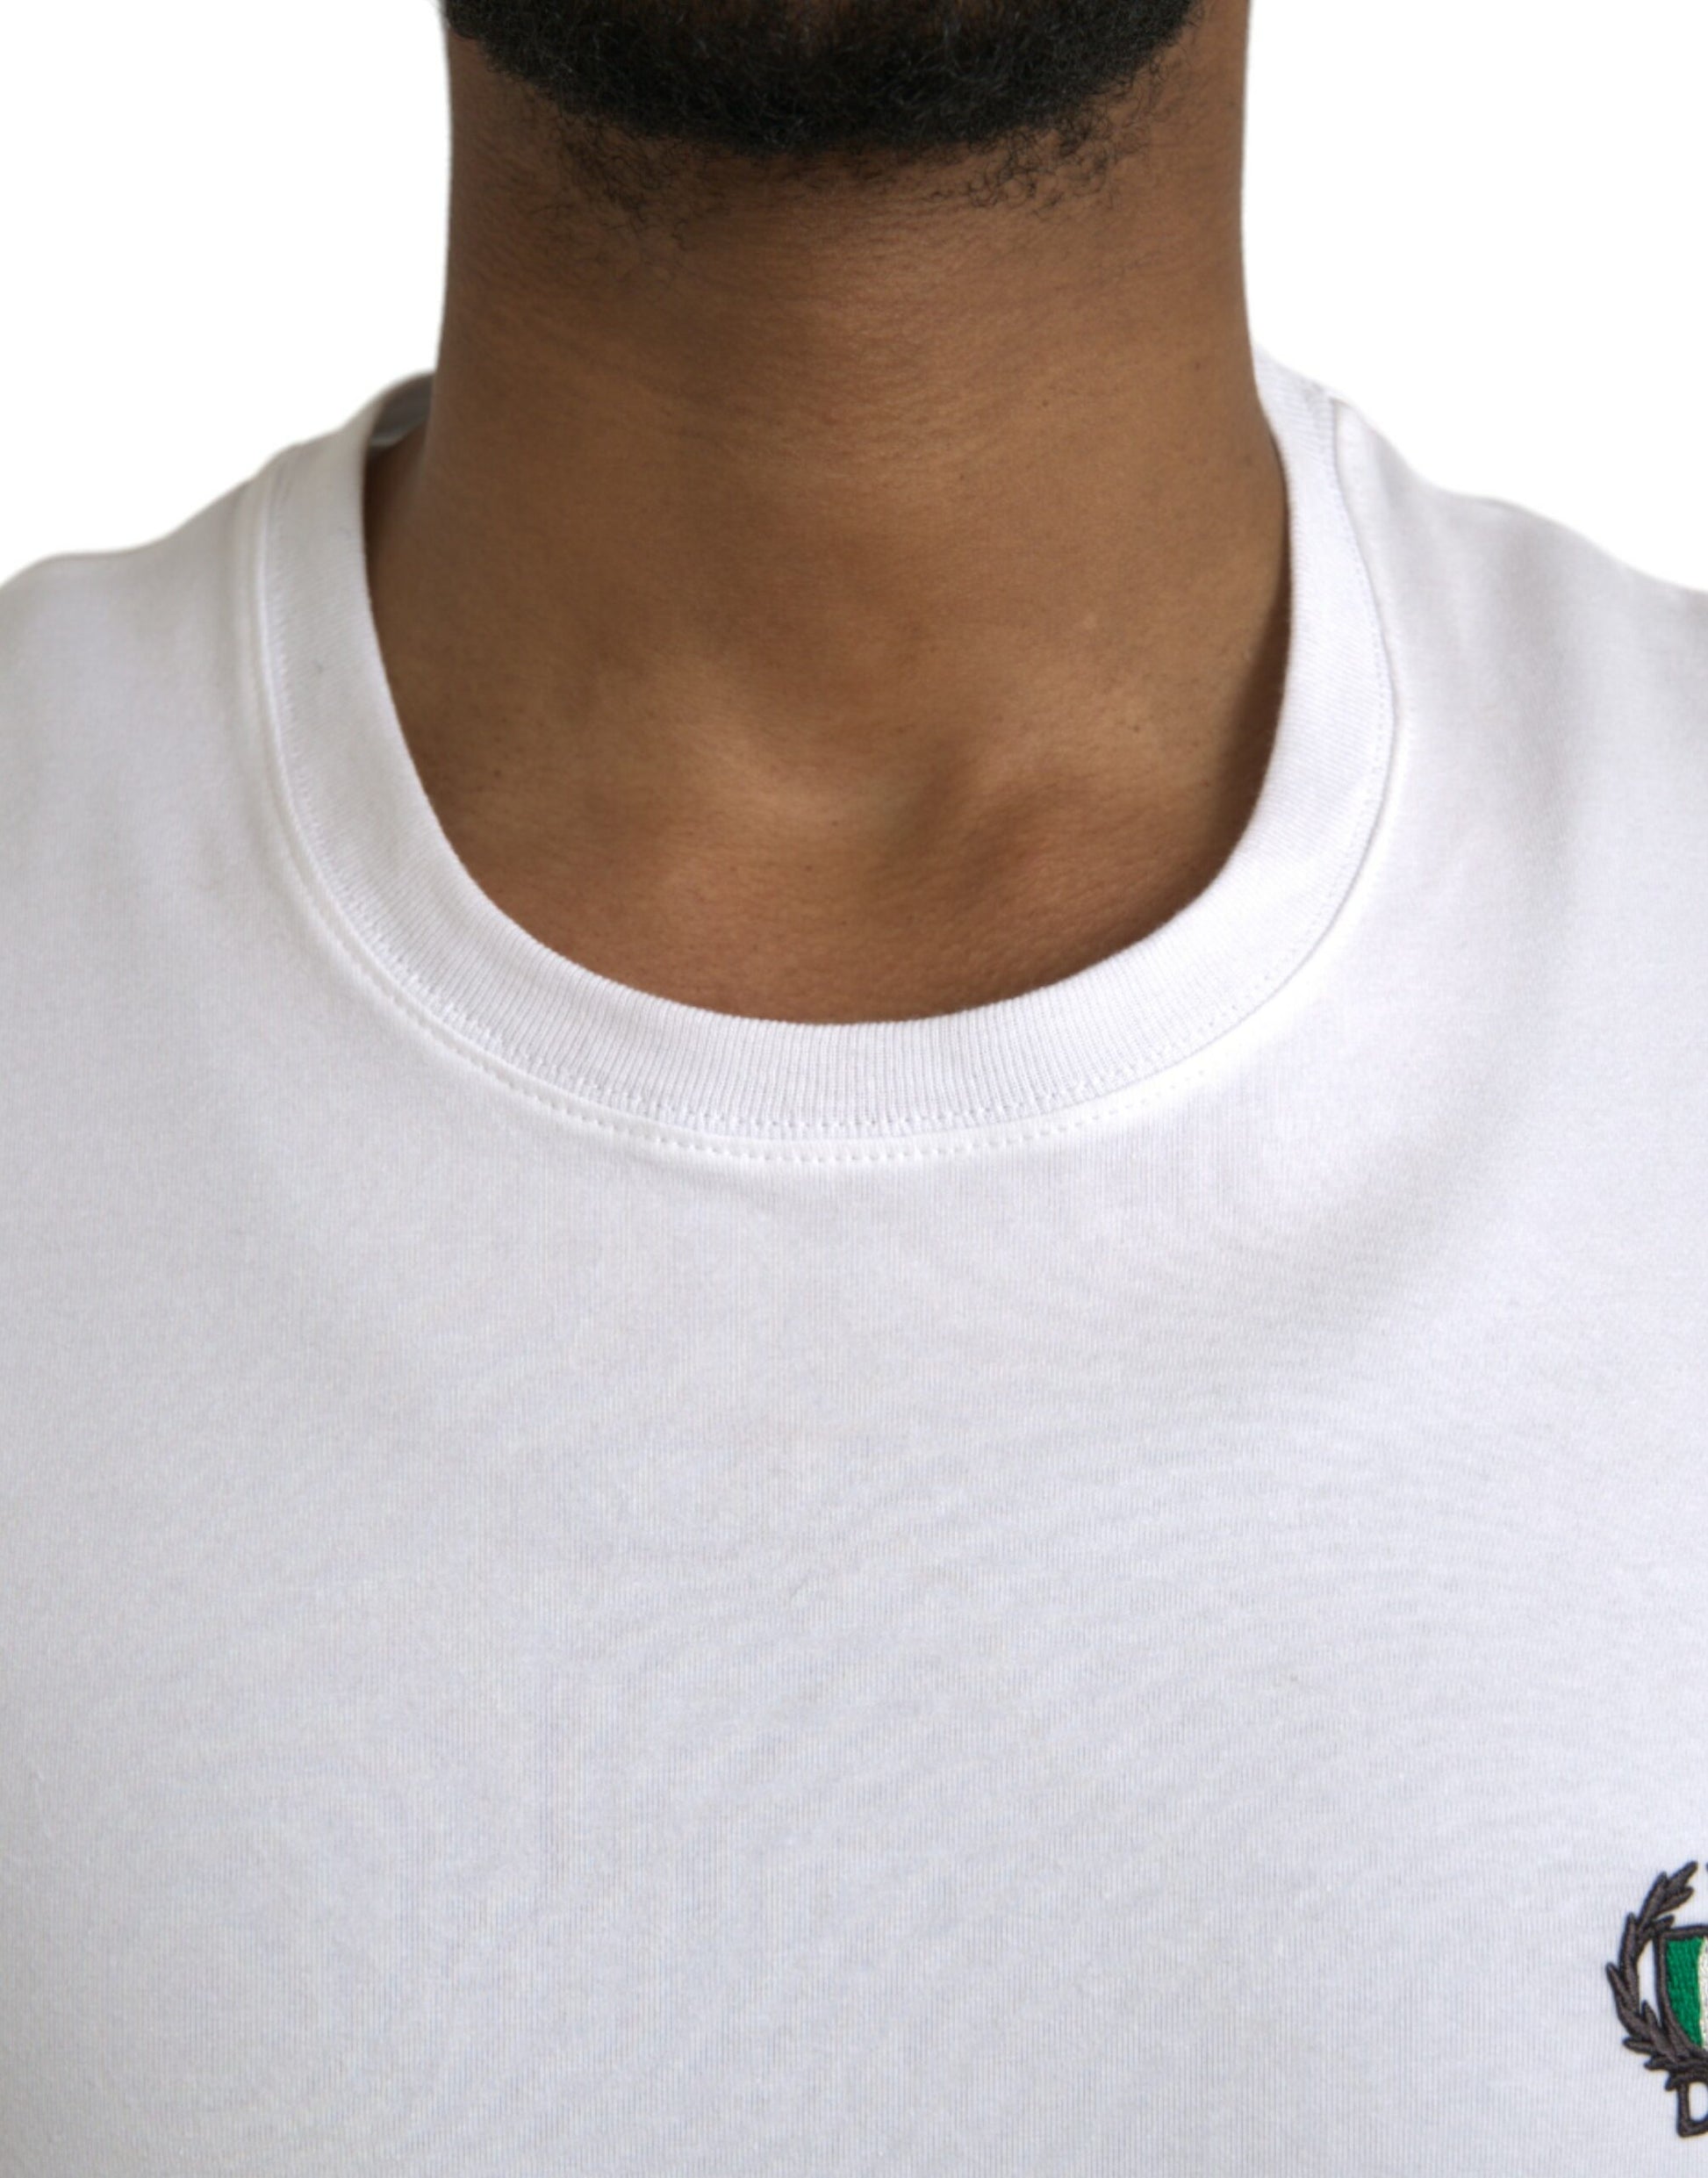 White Logo Crest Crew Neck Underwear T-shirt